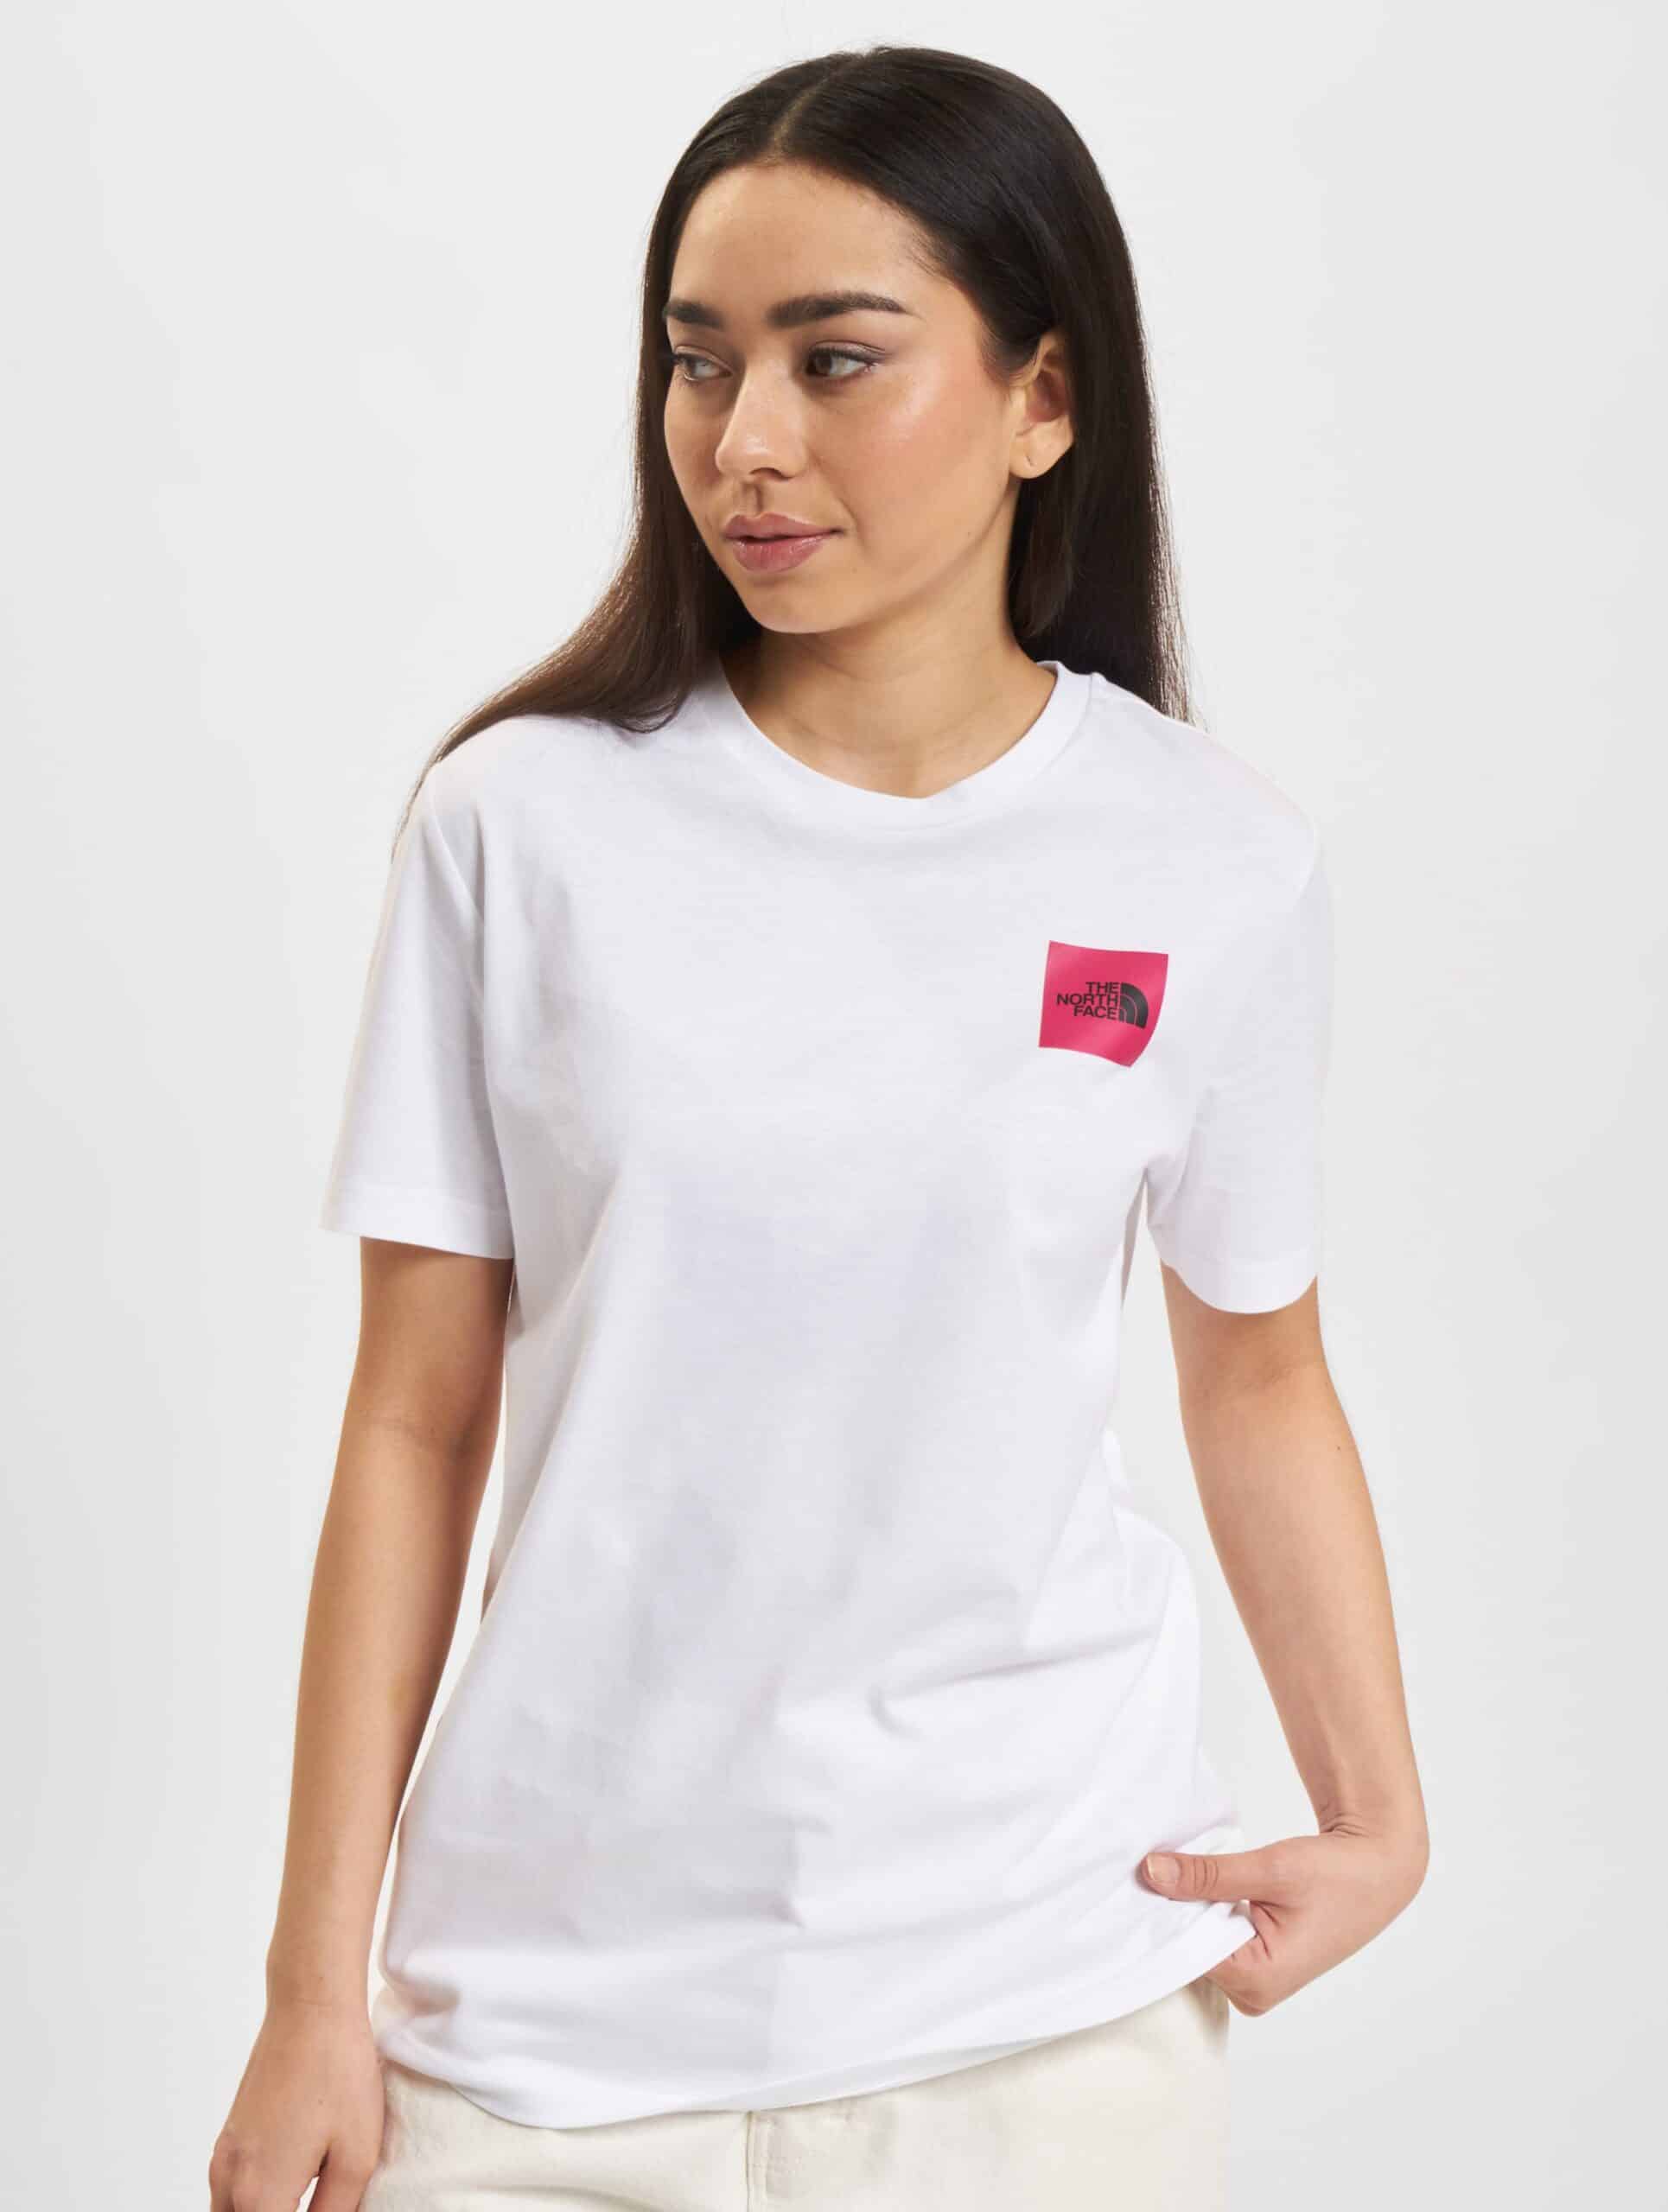 The North Face Coordinates T-Shirts Frauen,Unisex op kleur wit, Maat M